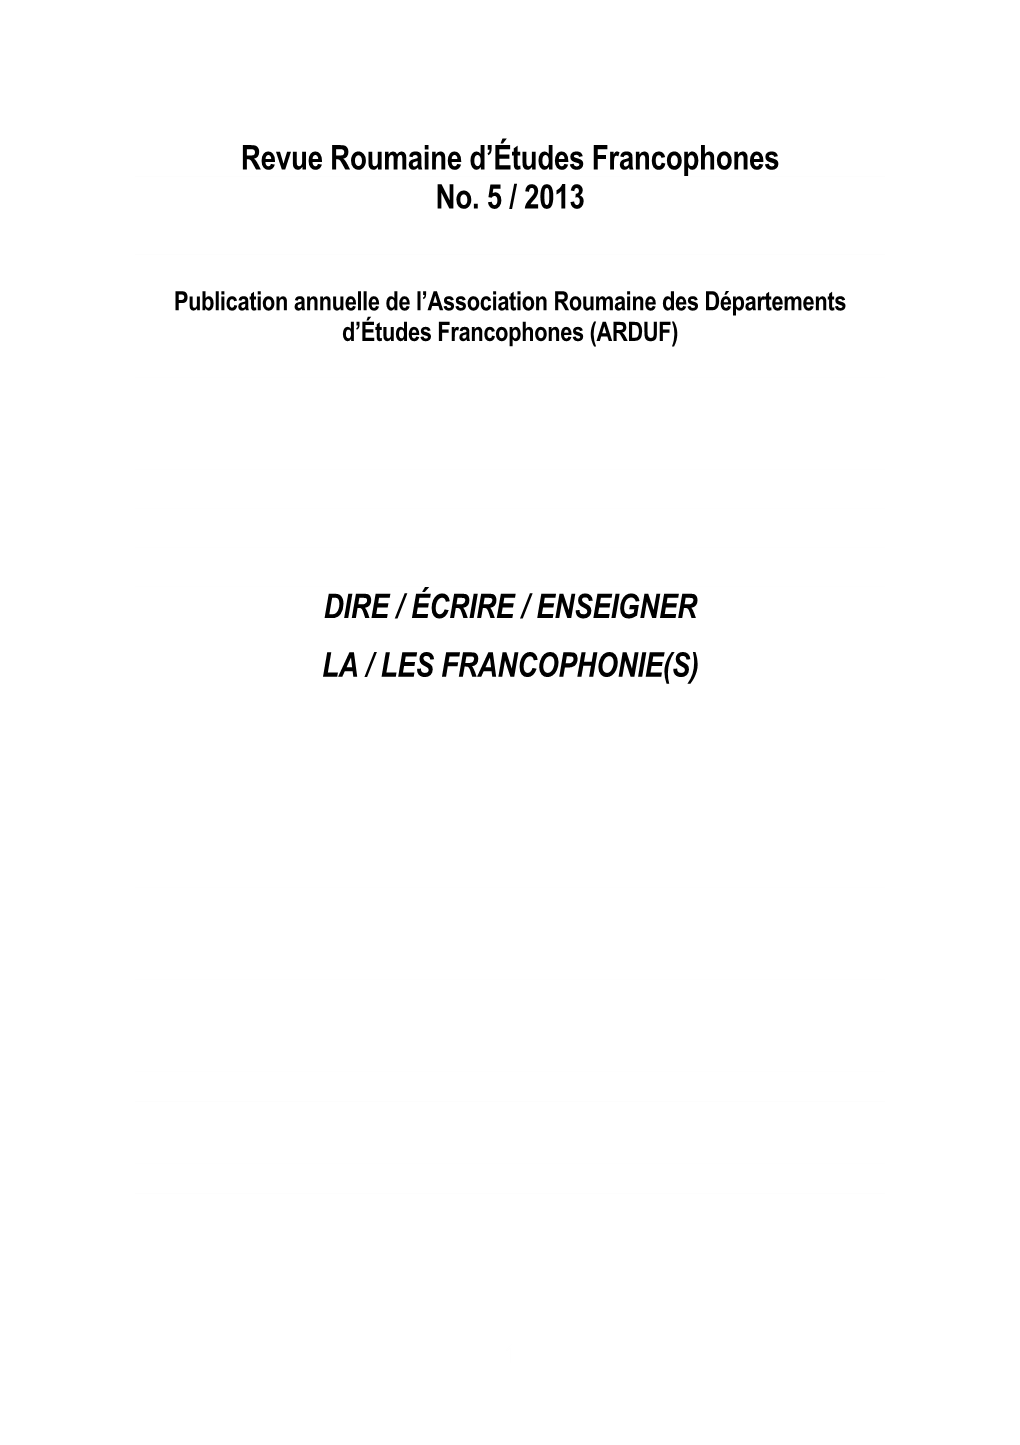 Revue Roumaine D'études Francophones No. 5 / 2013 DIRE